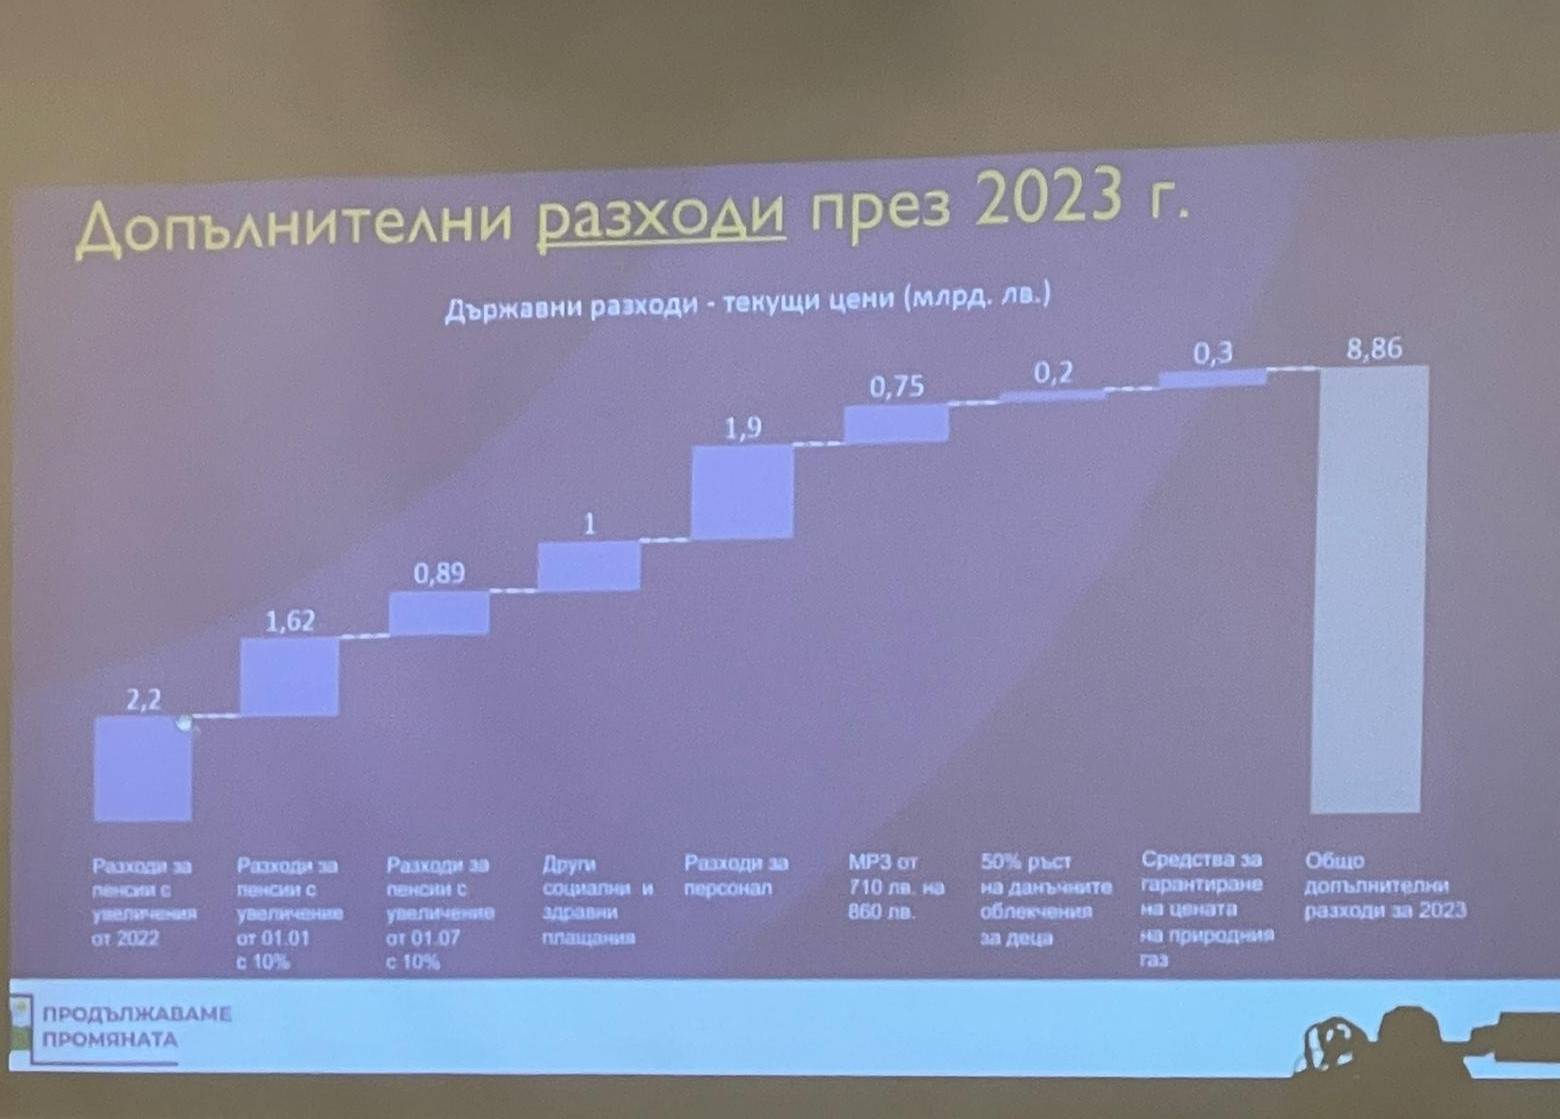 Допълнителни разходи през 2023 година